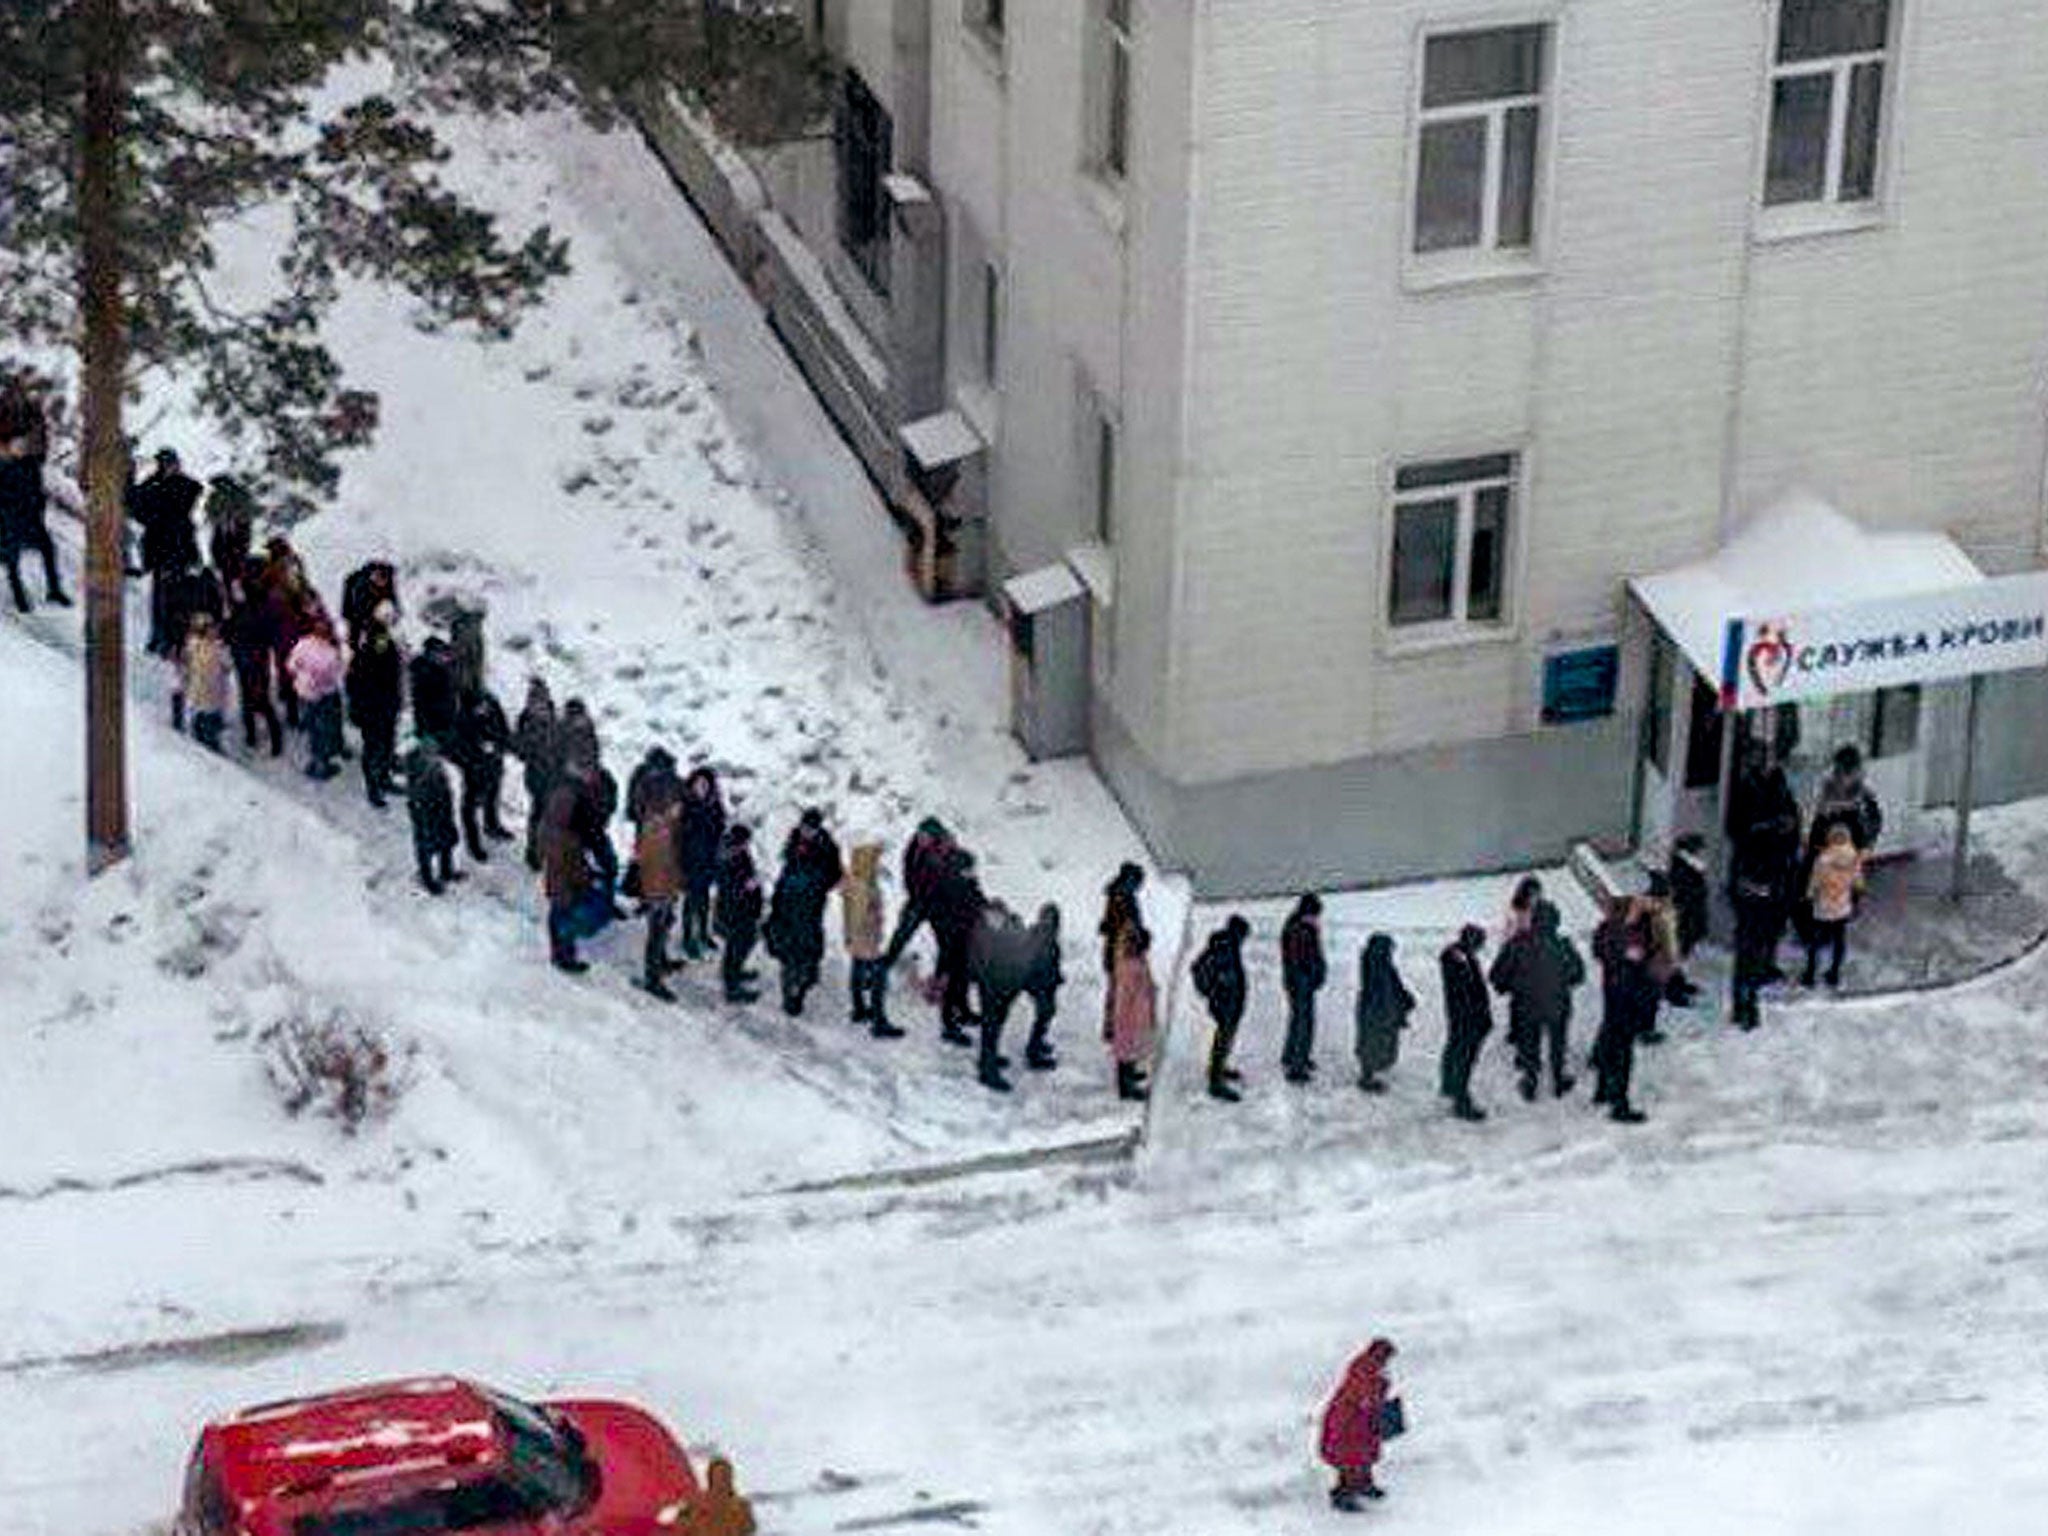 Volunteers queue up to donate blood